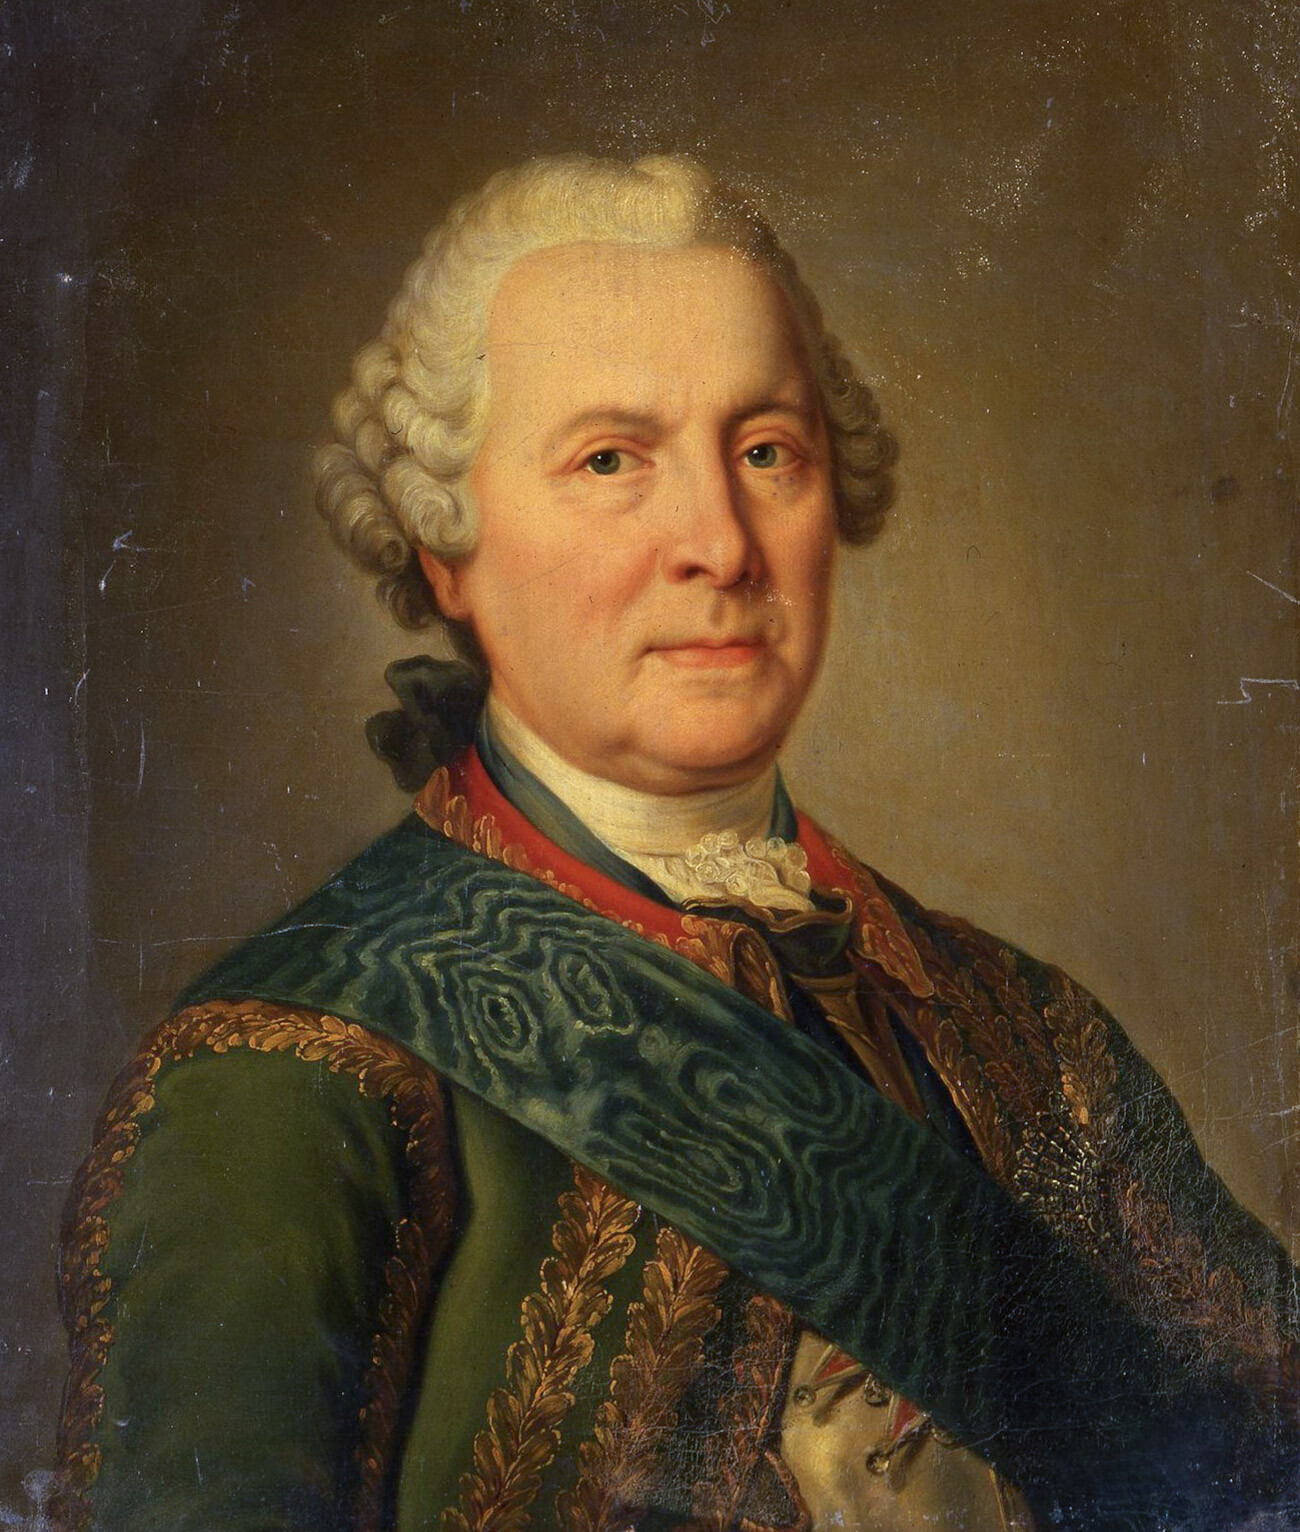 Burkhard Christoph von Münnich